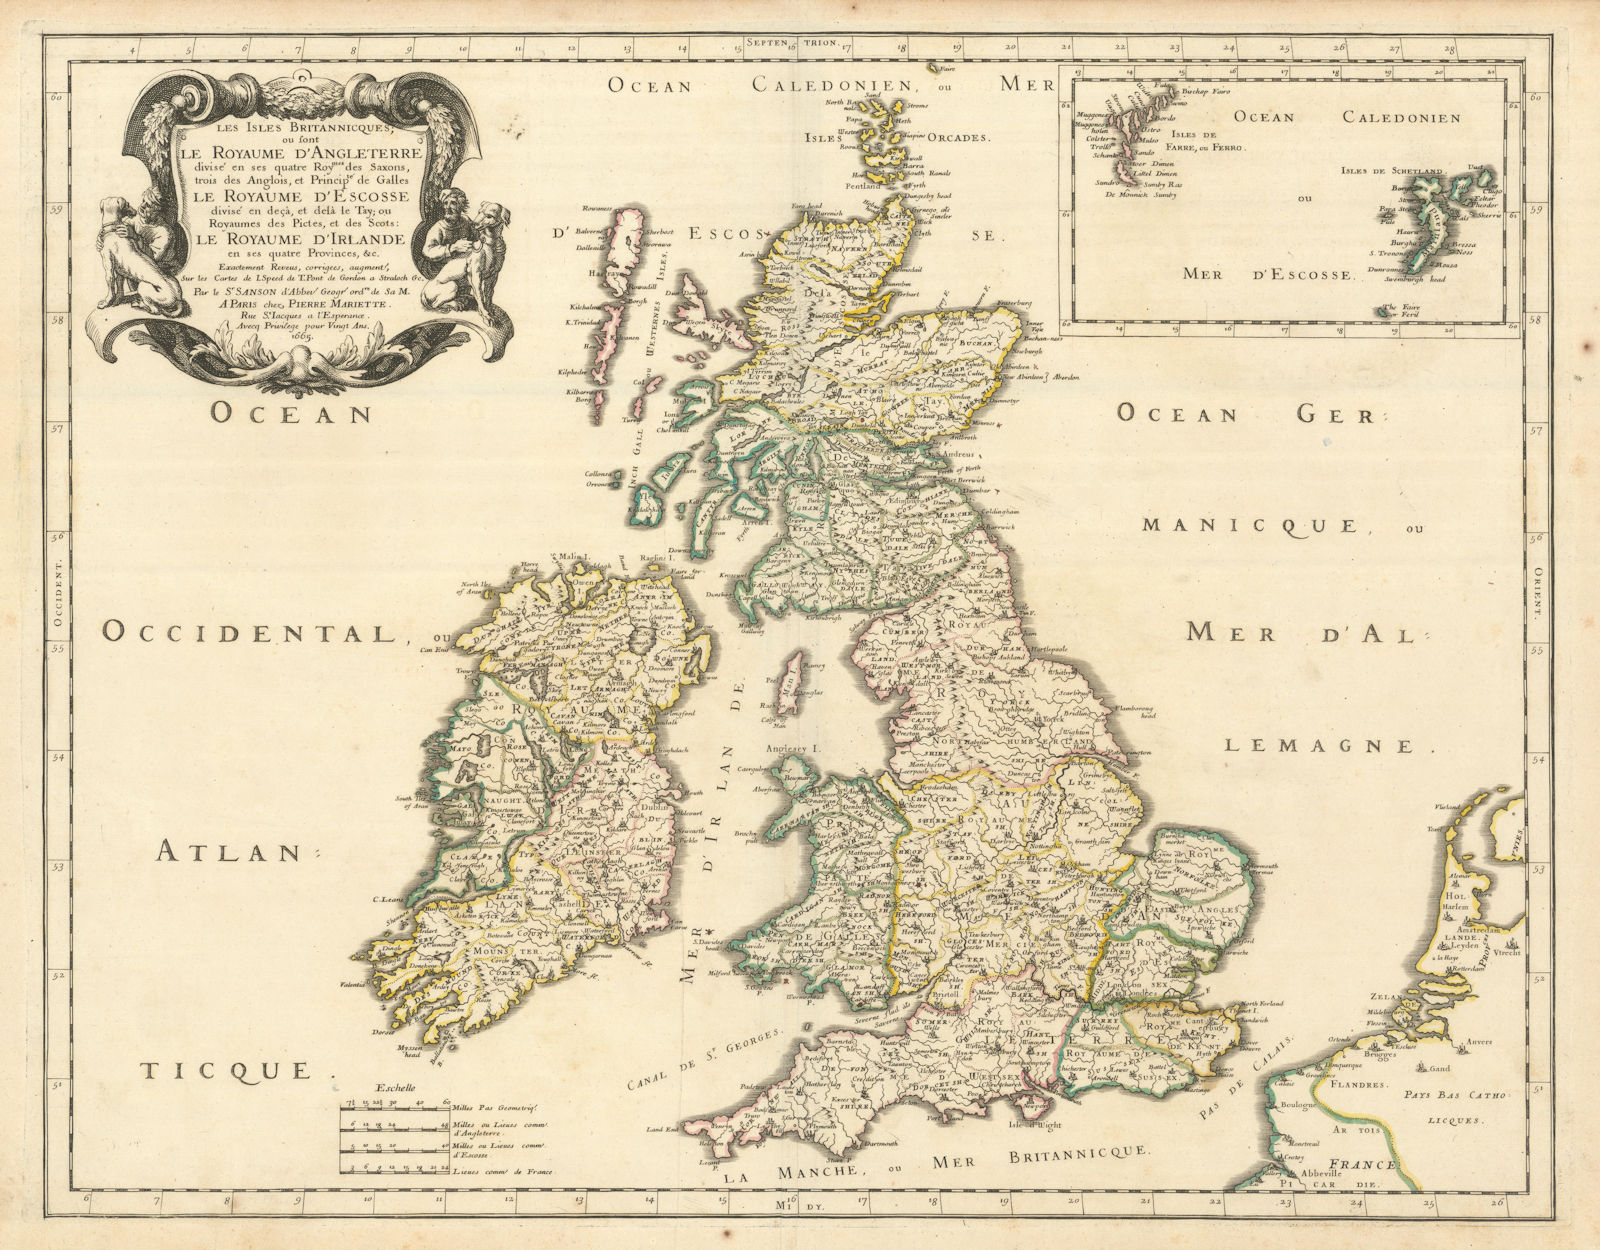 Associate Product Les Iles Britannicques ou sont Le Royaume d'Angleterre divisé. SANSON 1665 map